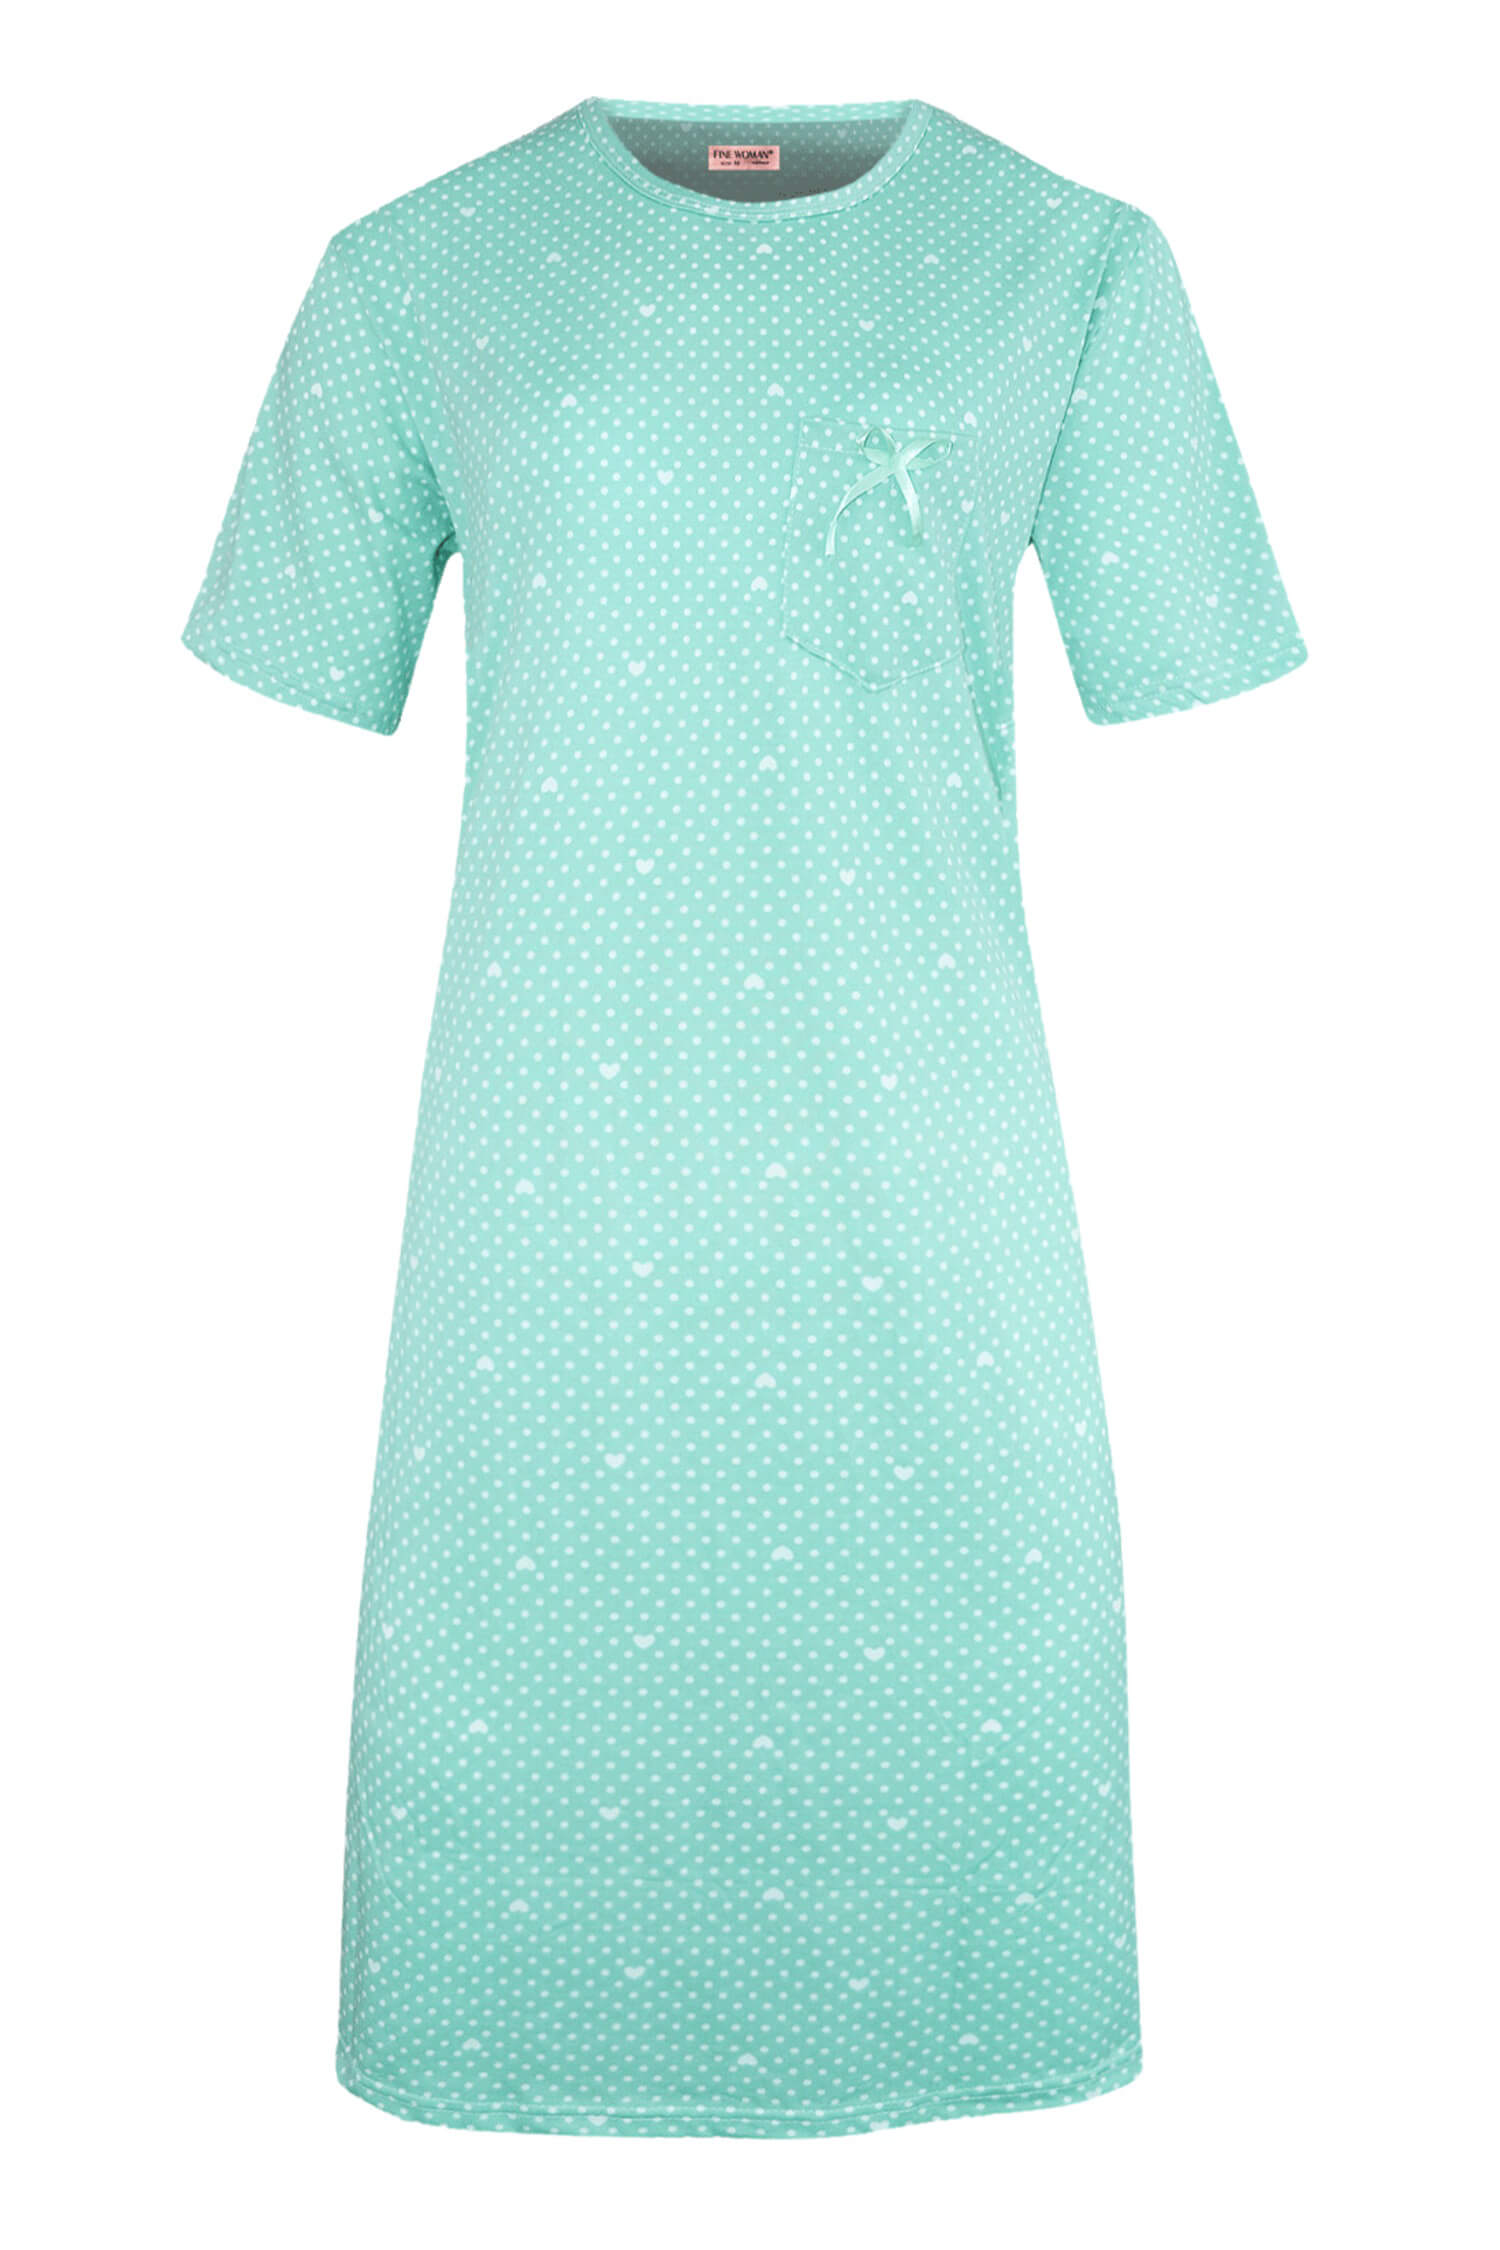 Danuška dámská noční košile s puntíky 6528 XL světle zelená